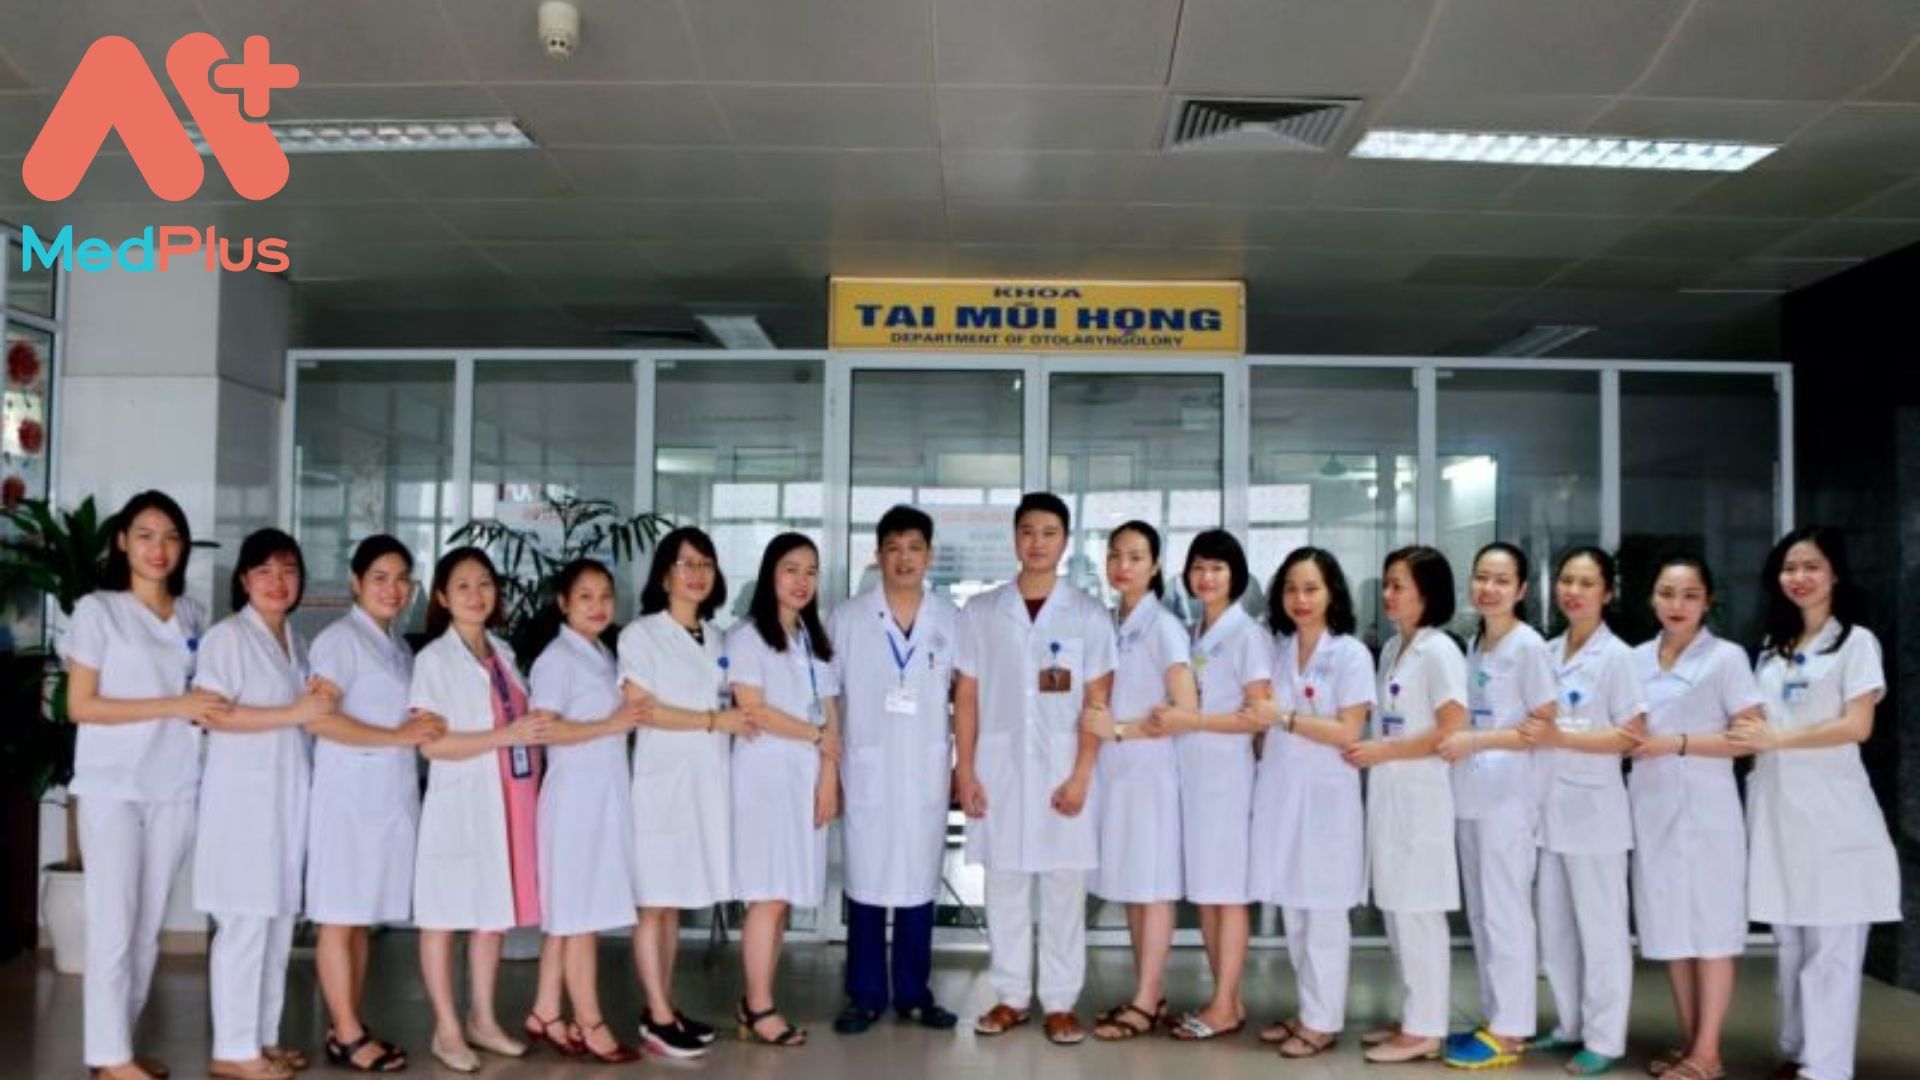 Khoa Tai Mũi Họng bệnh viện Thái Nguyên